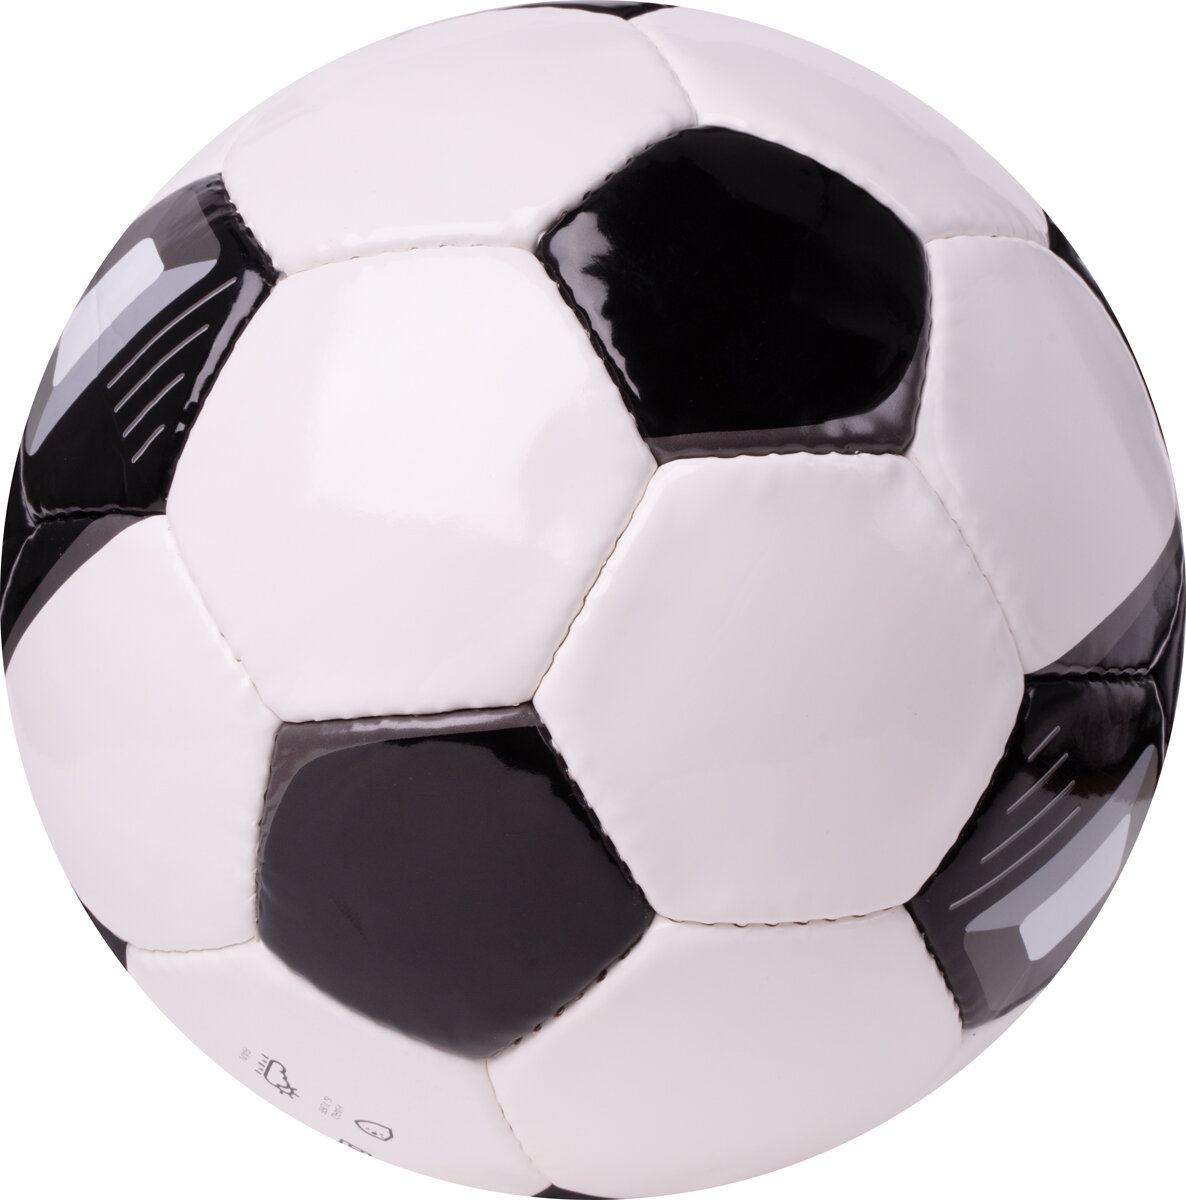 Мяч футбольный TORRES Classic NEW, размер 5 (поставляется накаченным)